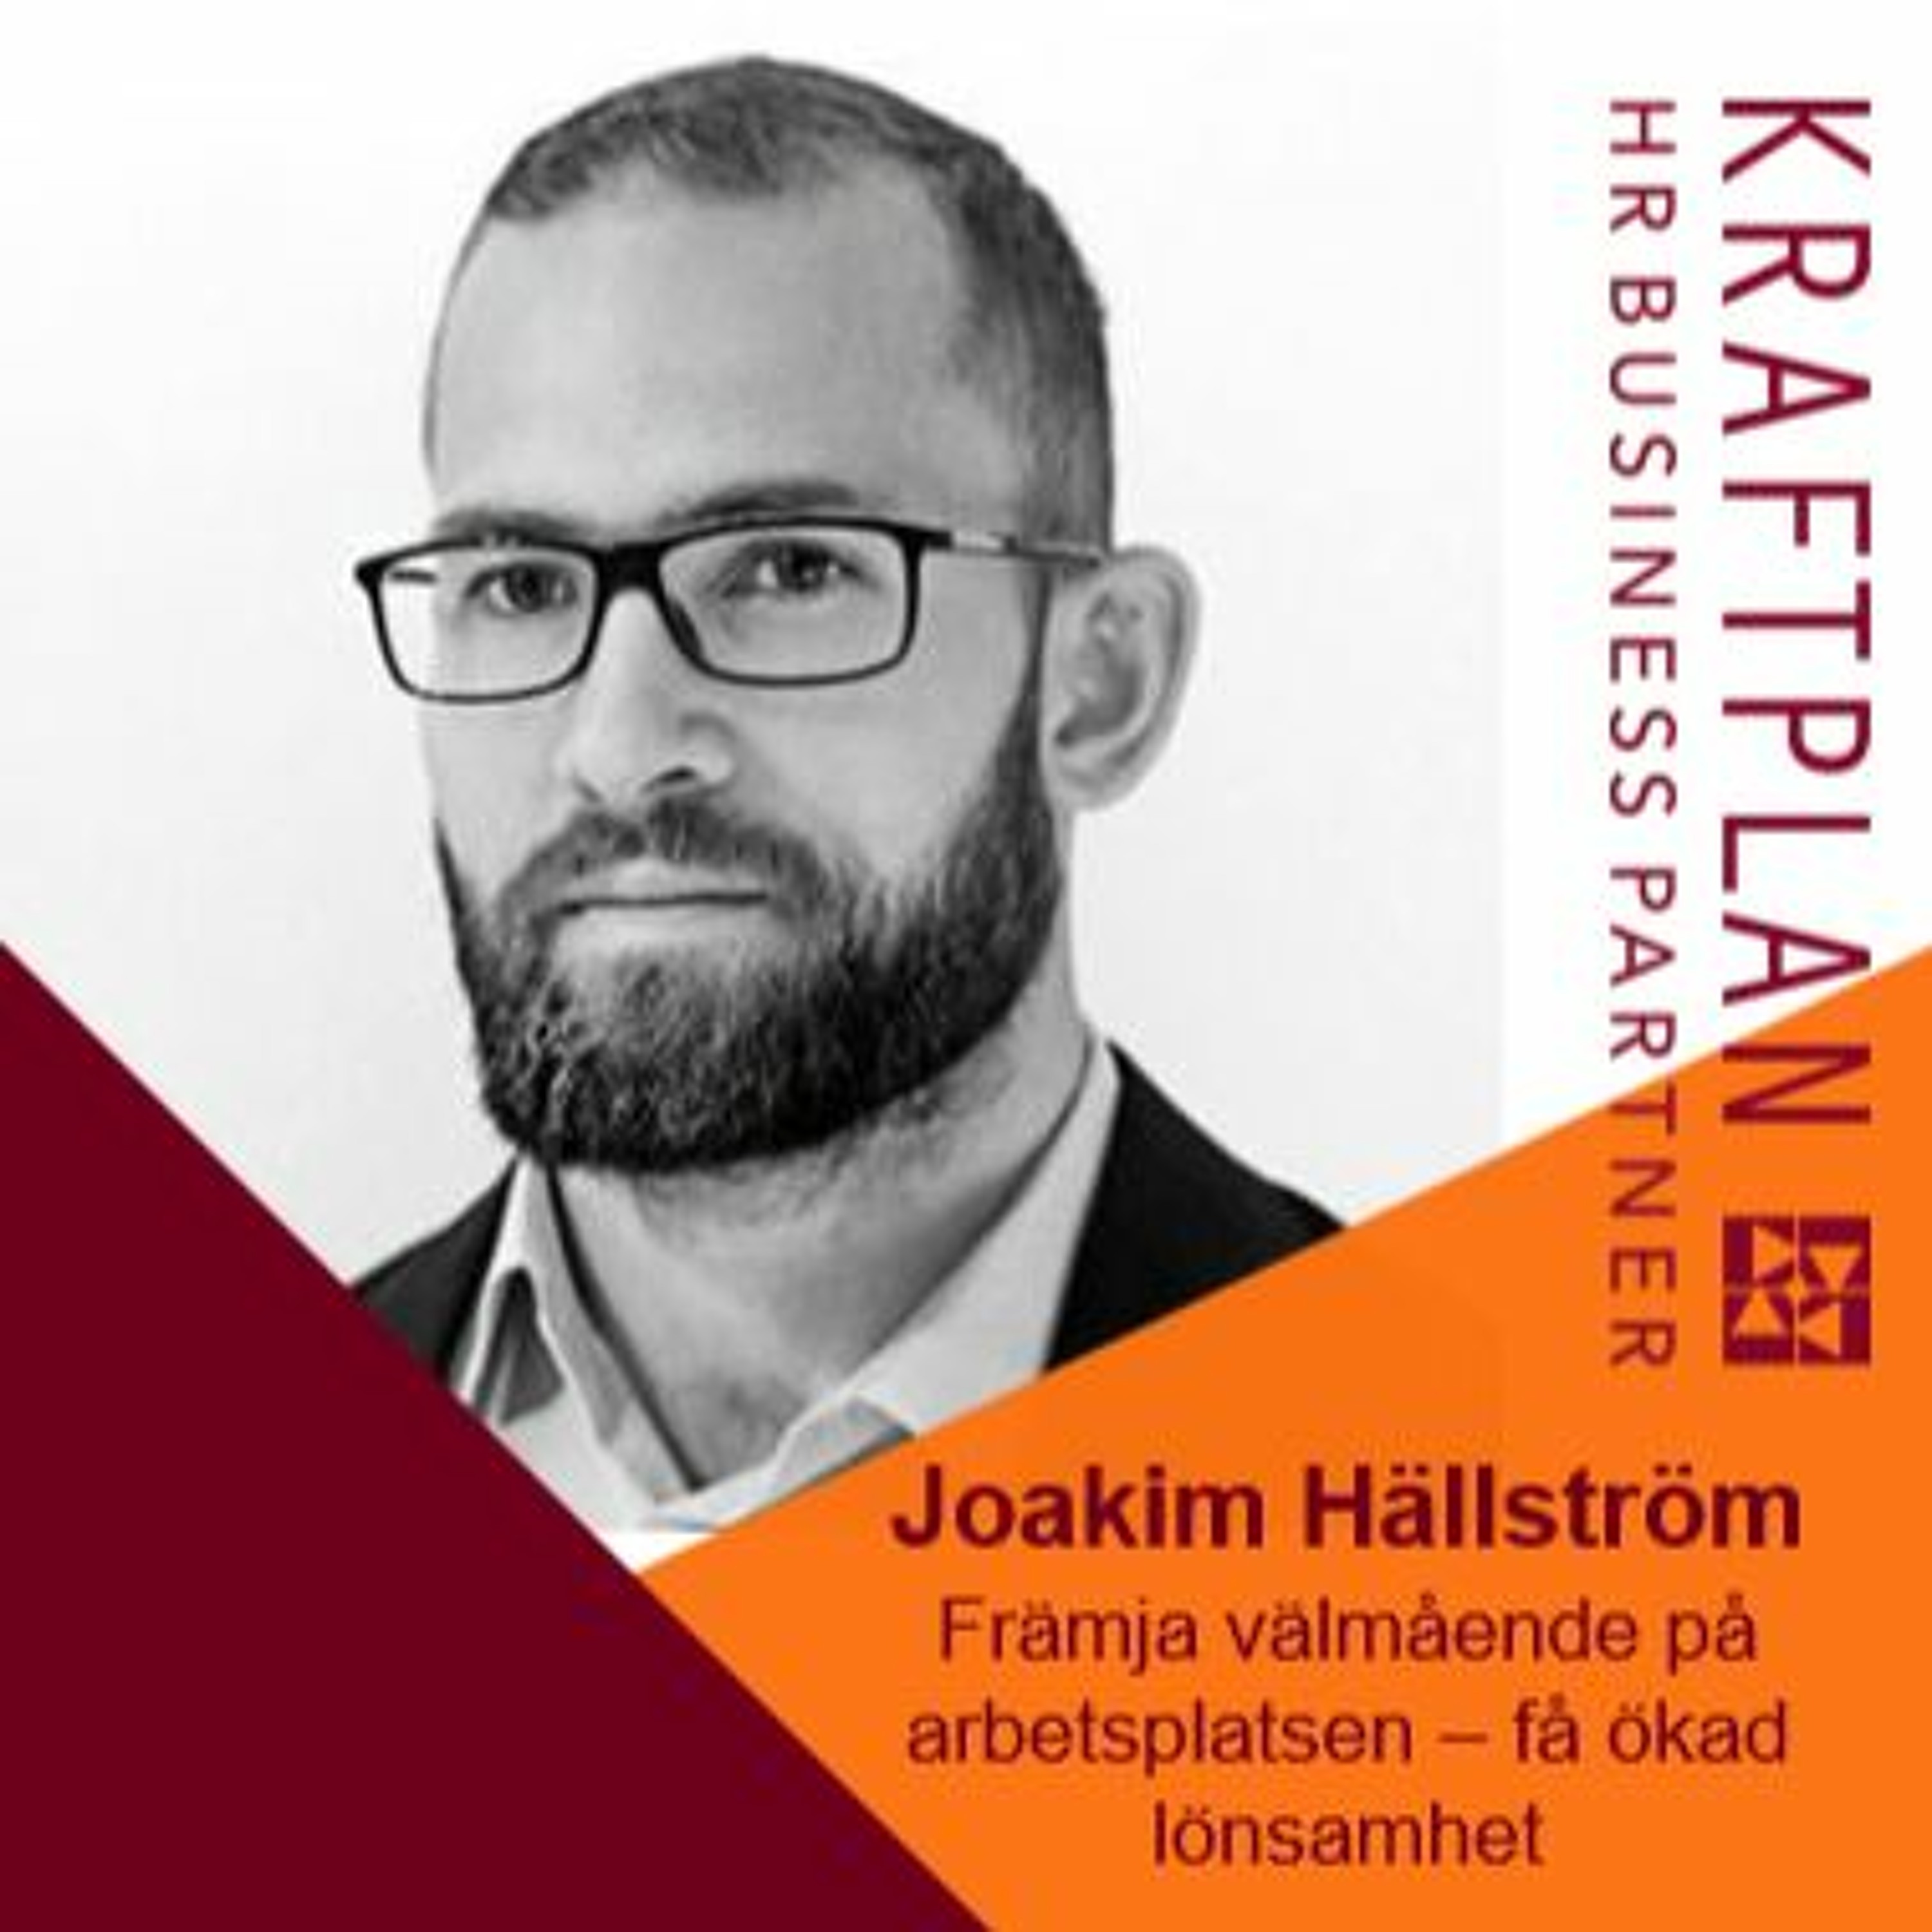 Joakim Hällström - att lägga tid på medarbetarnas välmående ger ökad lönsamhet